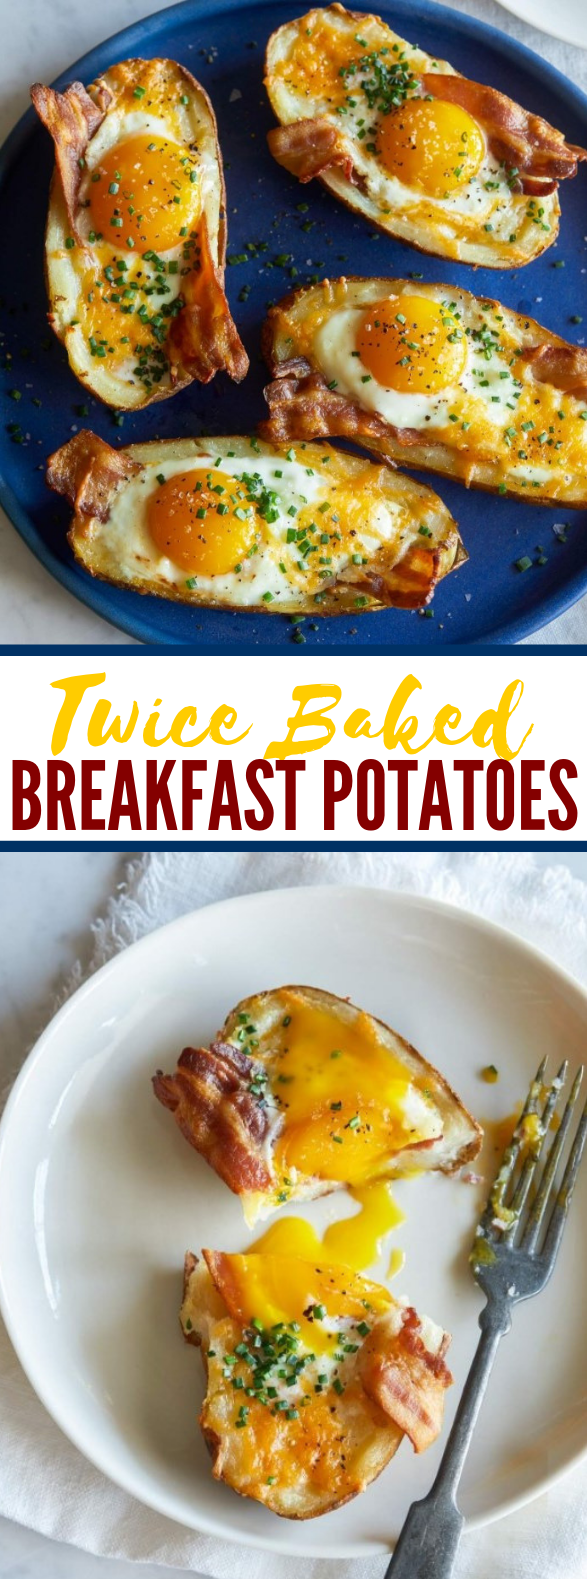 Twice Baked Breakfast Potatoes #healthy #brunch